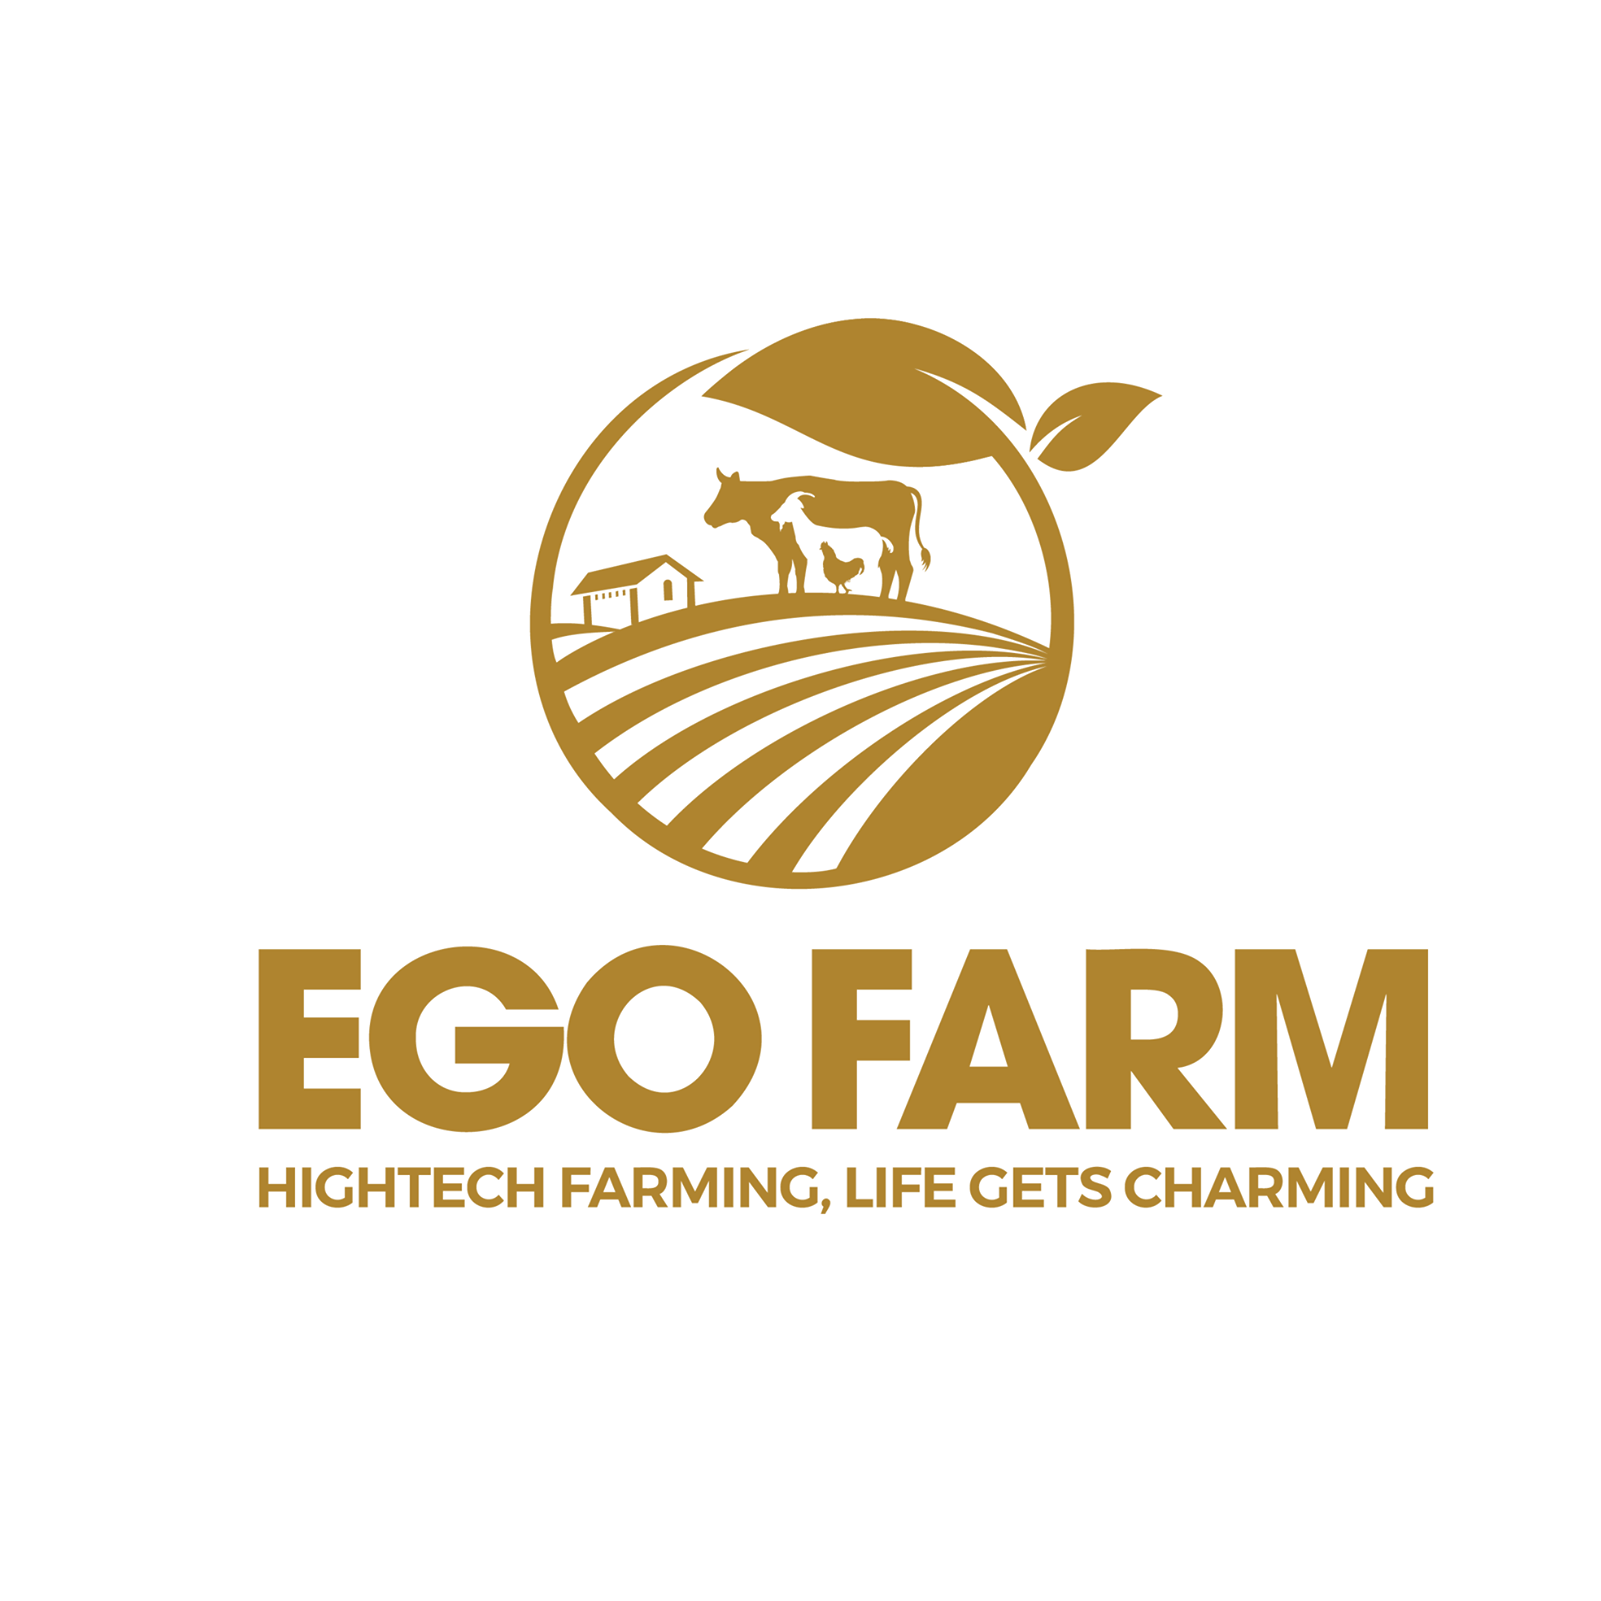 ABOUT EGO FARM